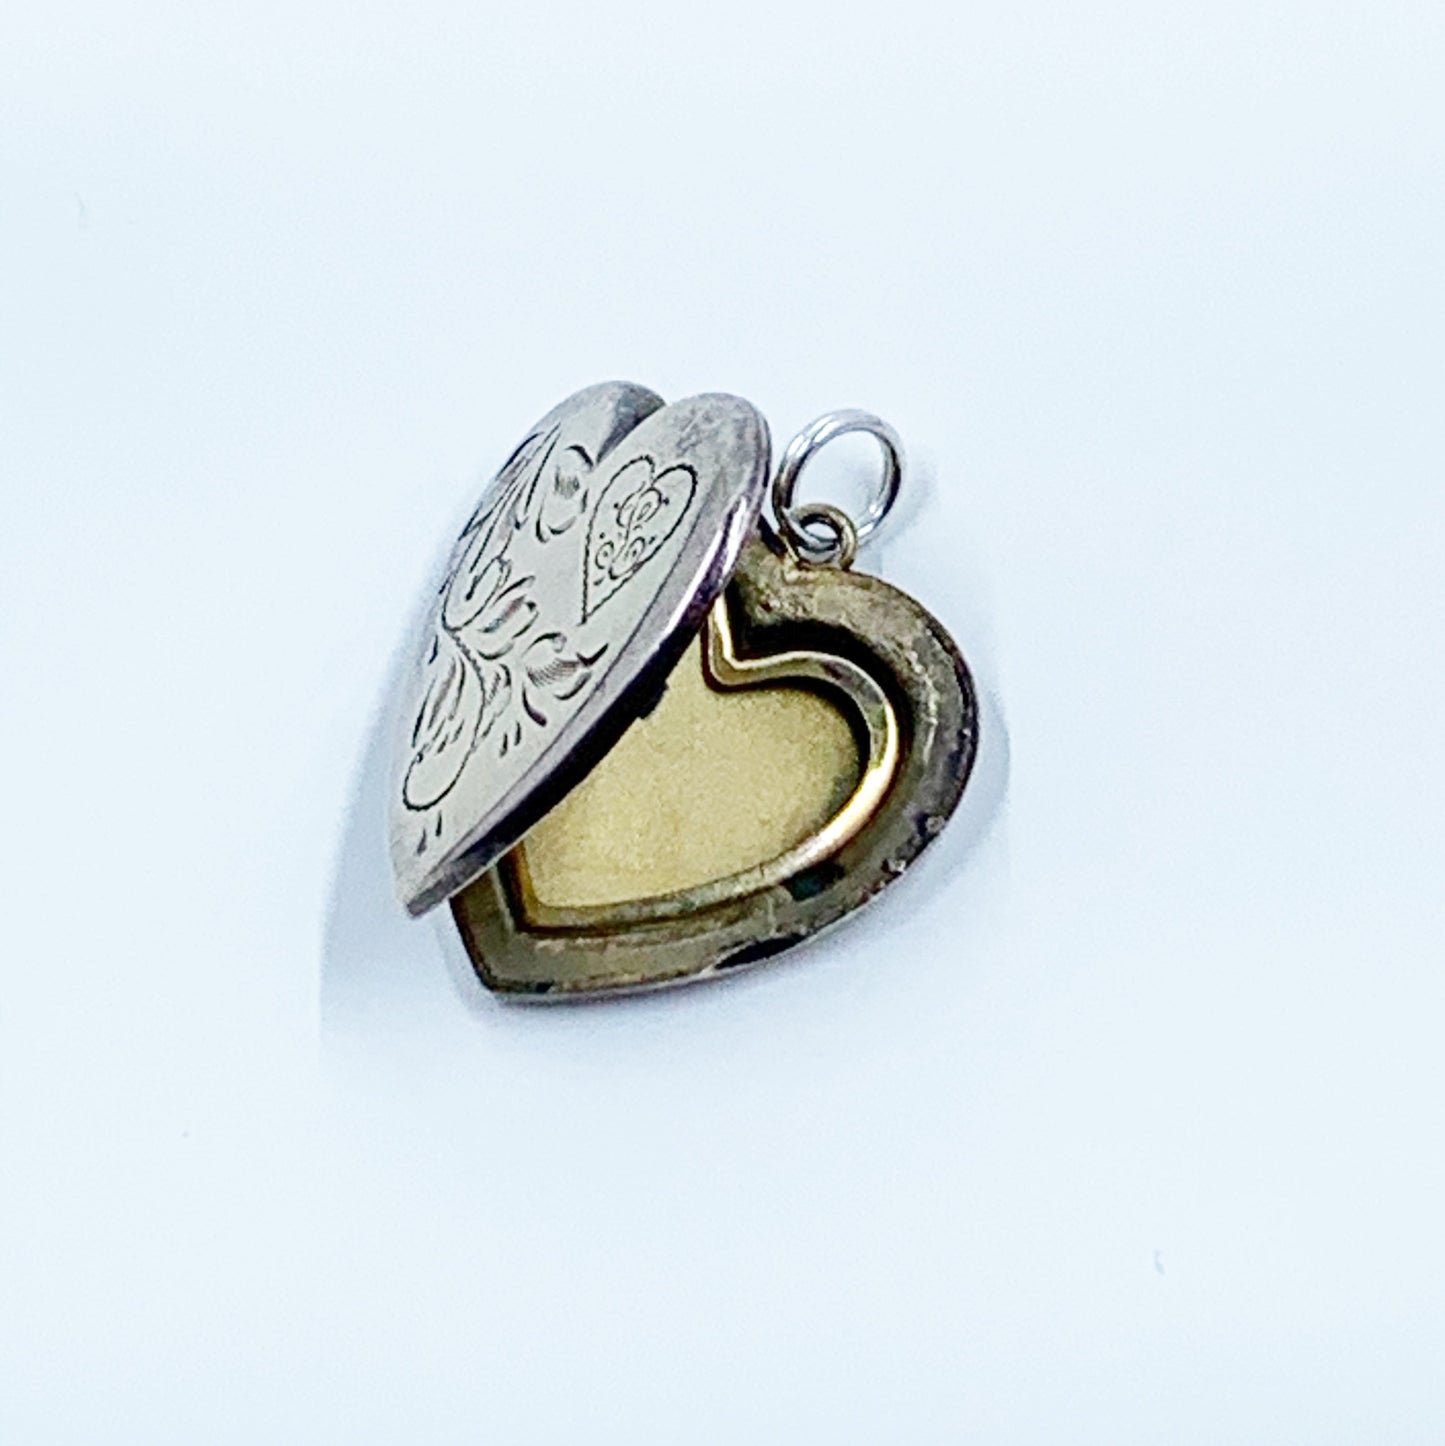 Vintage Gold Heart Floral Locket | Engraved Flower Heart Locket